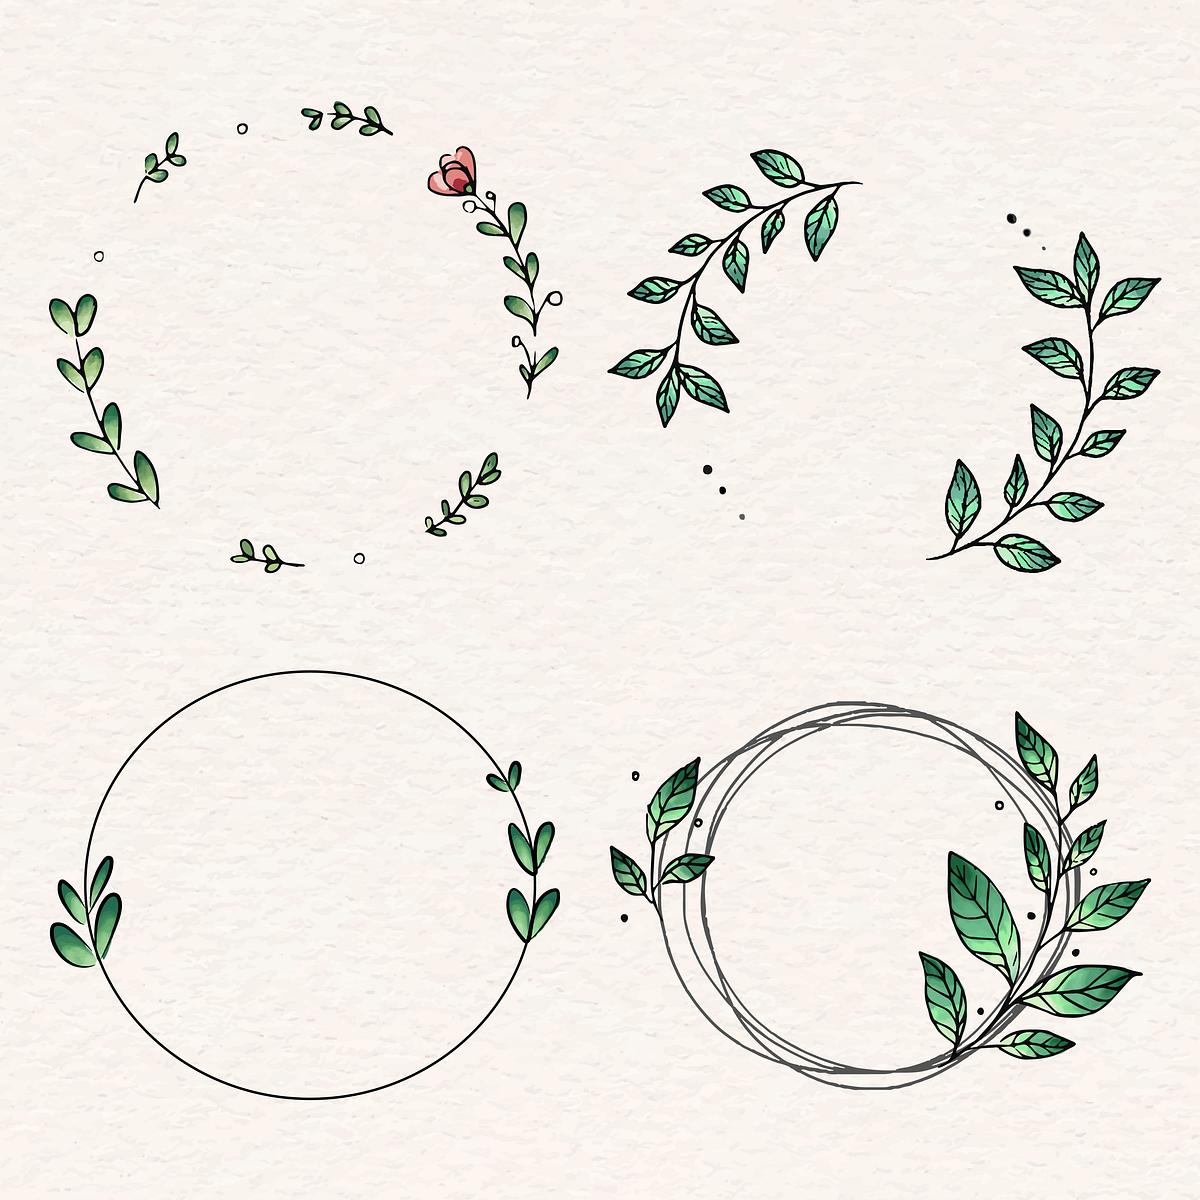 Download Laurel wreath design set | Royalty free stock illustration - 843838